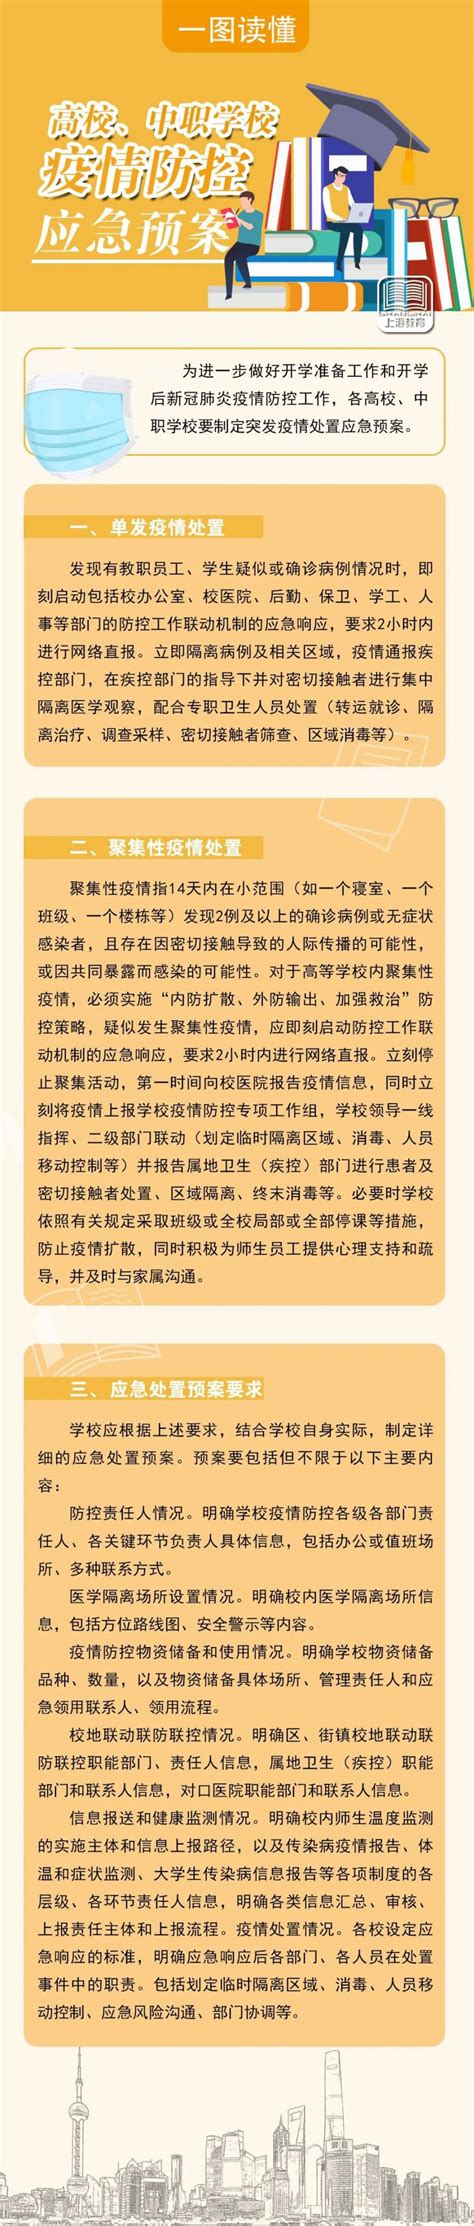 上海高校中职学校疫情防控应急预案 附图解- 上海本地宝